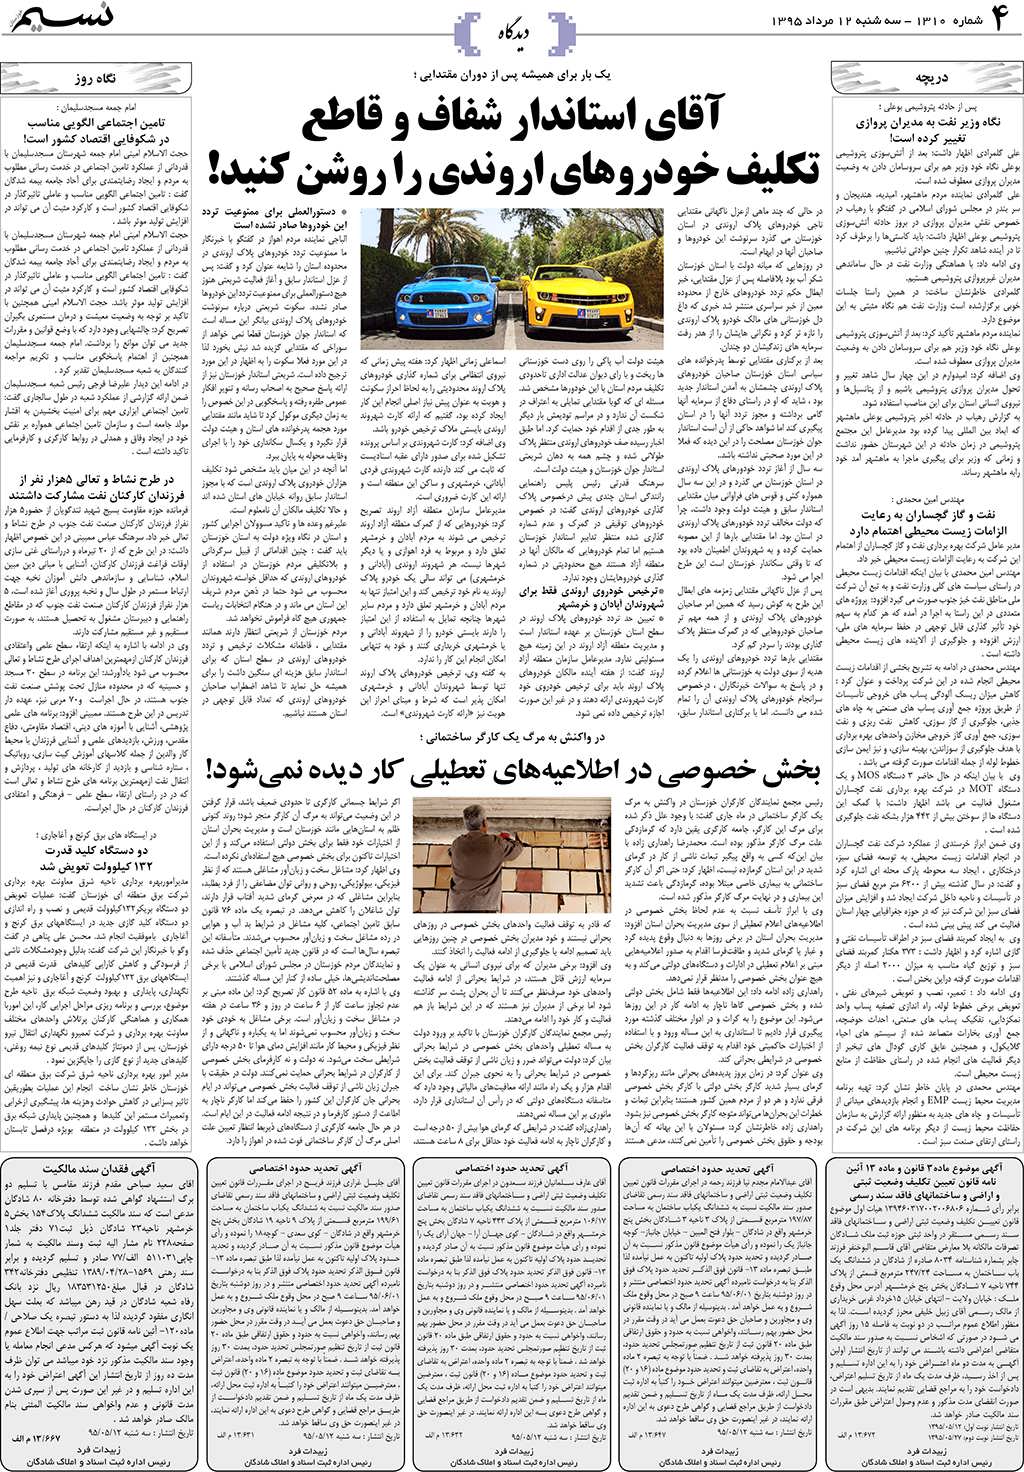 صفحه دیدگاه روزنامه نسیم شماره 1310